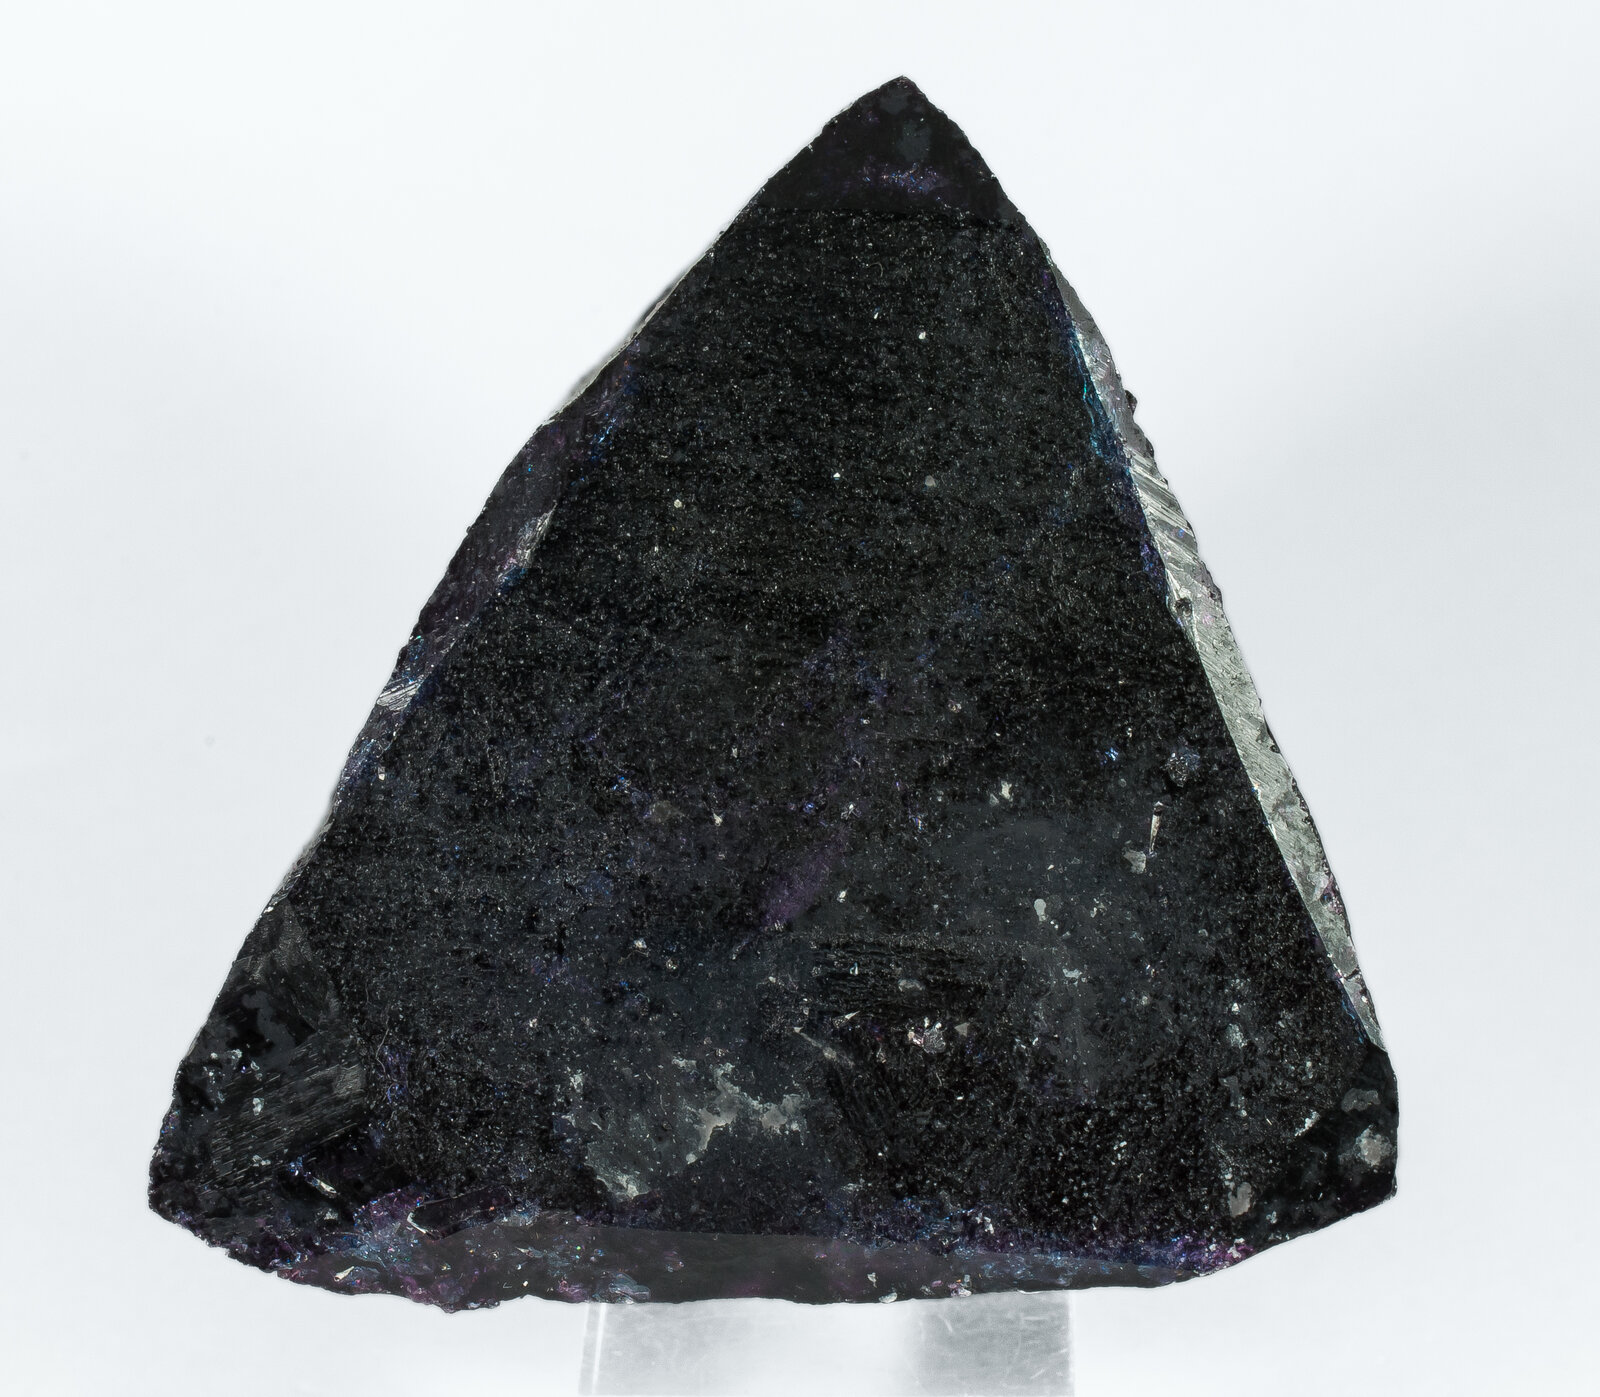 specimens/s_imagesAP1/Elbaite_Elbaite-TLM46AP1t.jpg